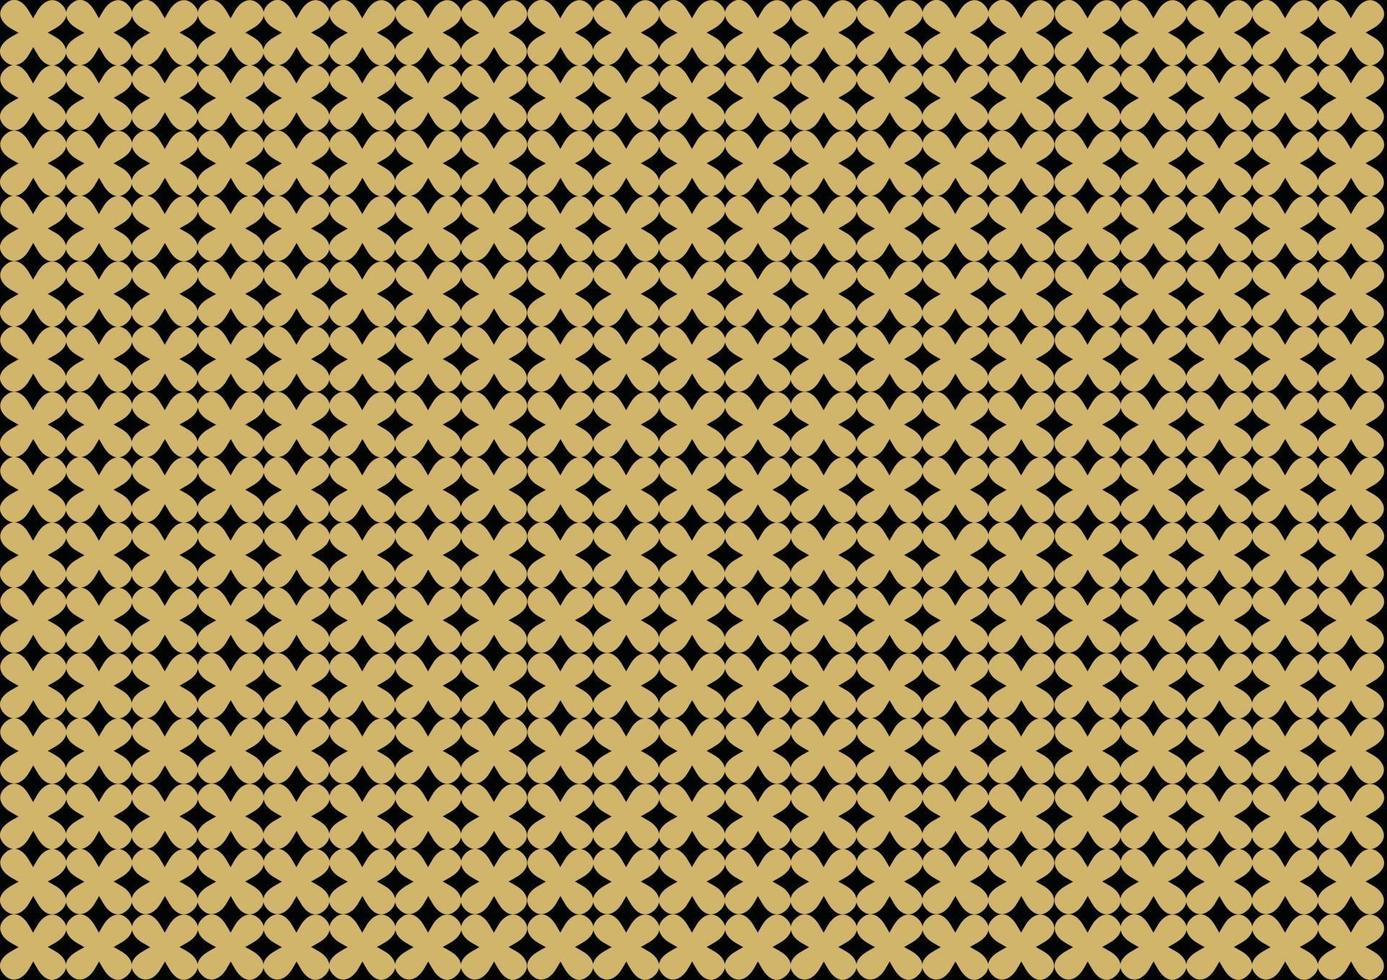 textura dourada. padrão geométrico sem emenda. fundo dourado abstrato. vetor moderno padrão retro